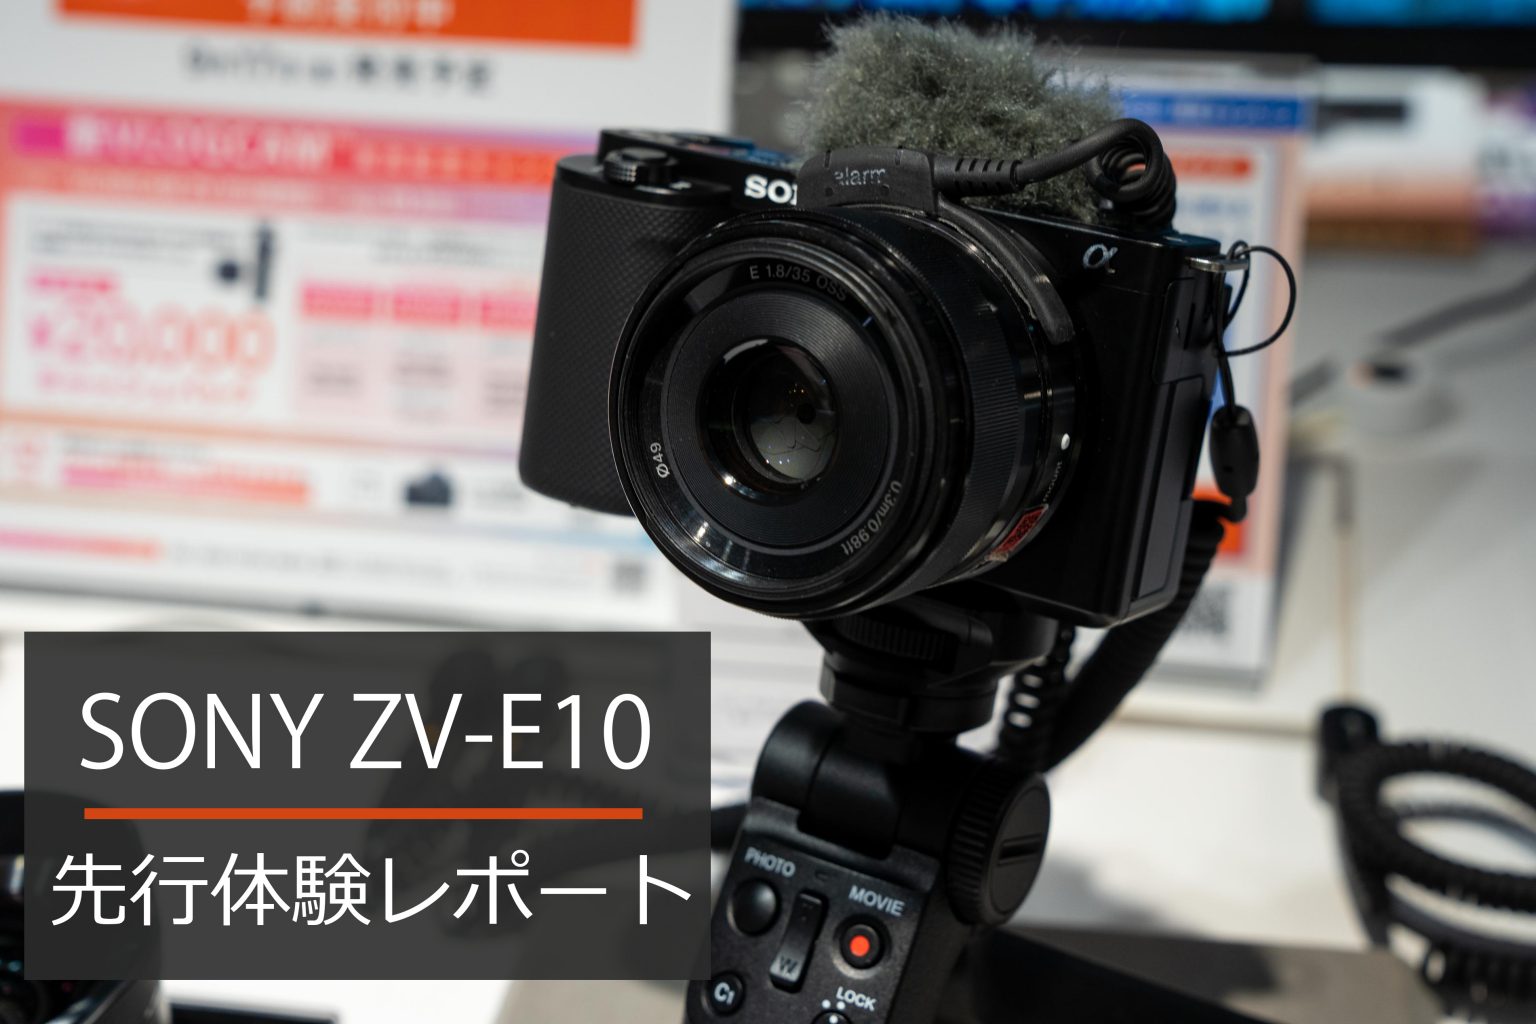 【SONY】ZV-E10 先行展示 体験レポート